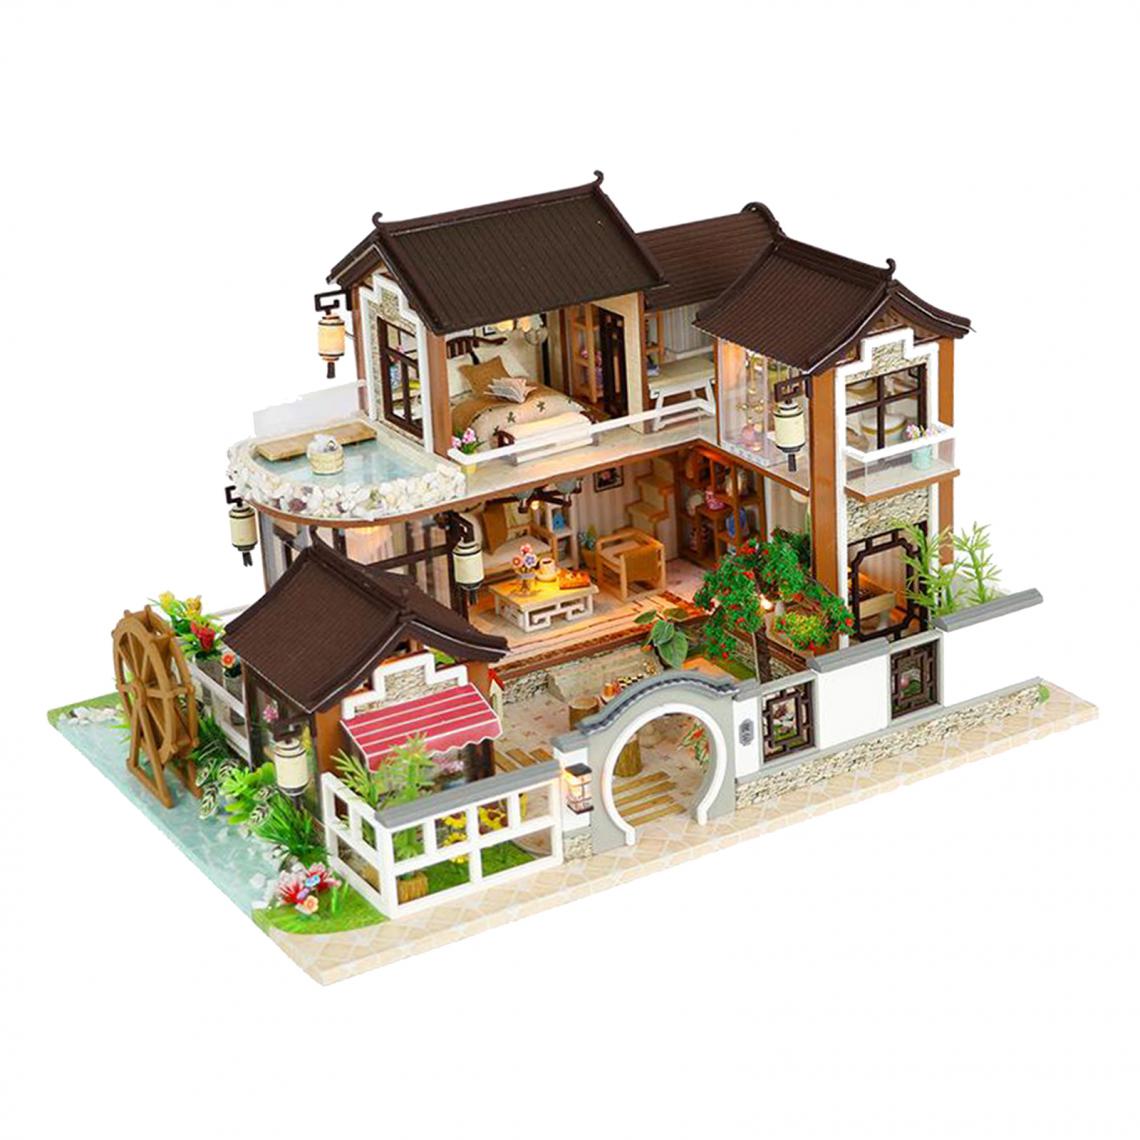 marque generique - Dollhouse Miniature avec des Meubles, BRICOLAGE En Bois Dollhouse Kit avec LED Lumière, 1:24 Échelle Creative Chambre Maison - Poupées